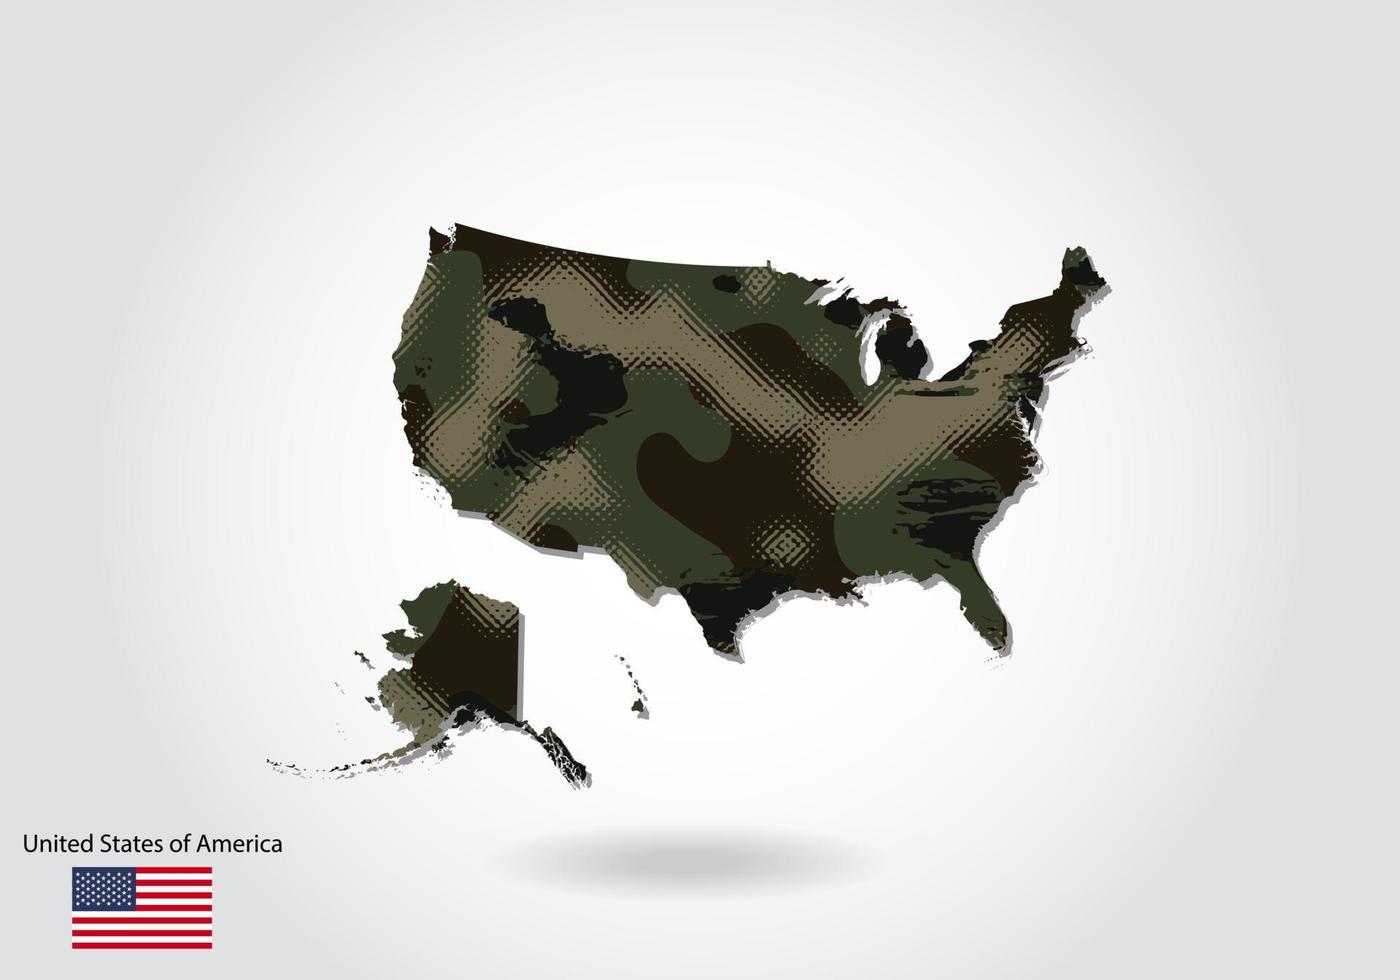 Amerikas förenta stater karta med kamouflagemönster, skog - grön struktur i kartan. militärt koncept för armé, soldat och krig. vapensköld, flagga. vektor